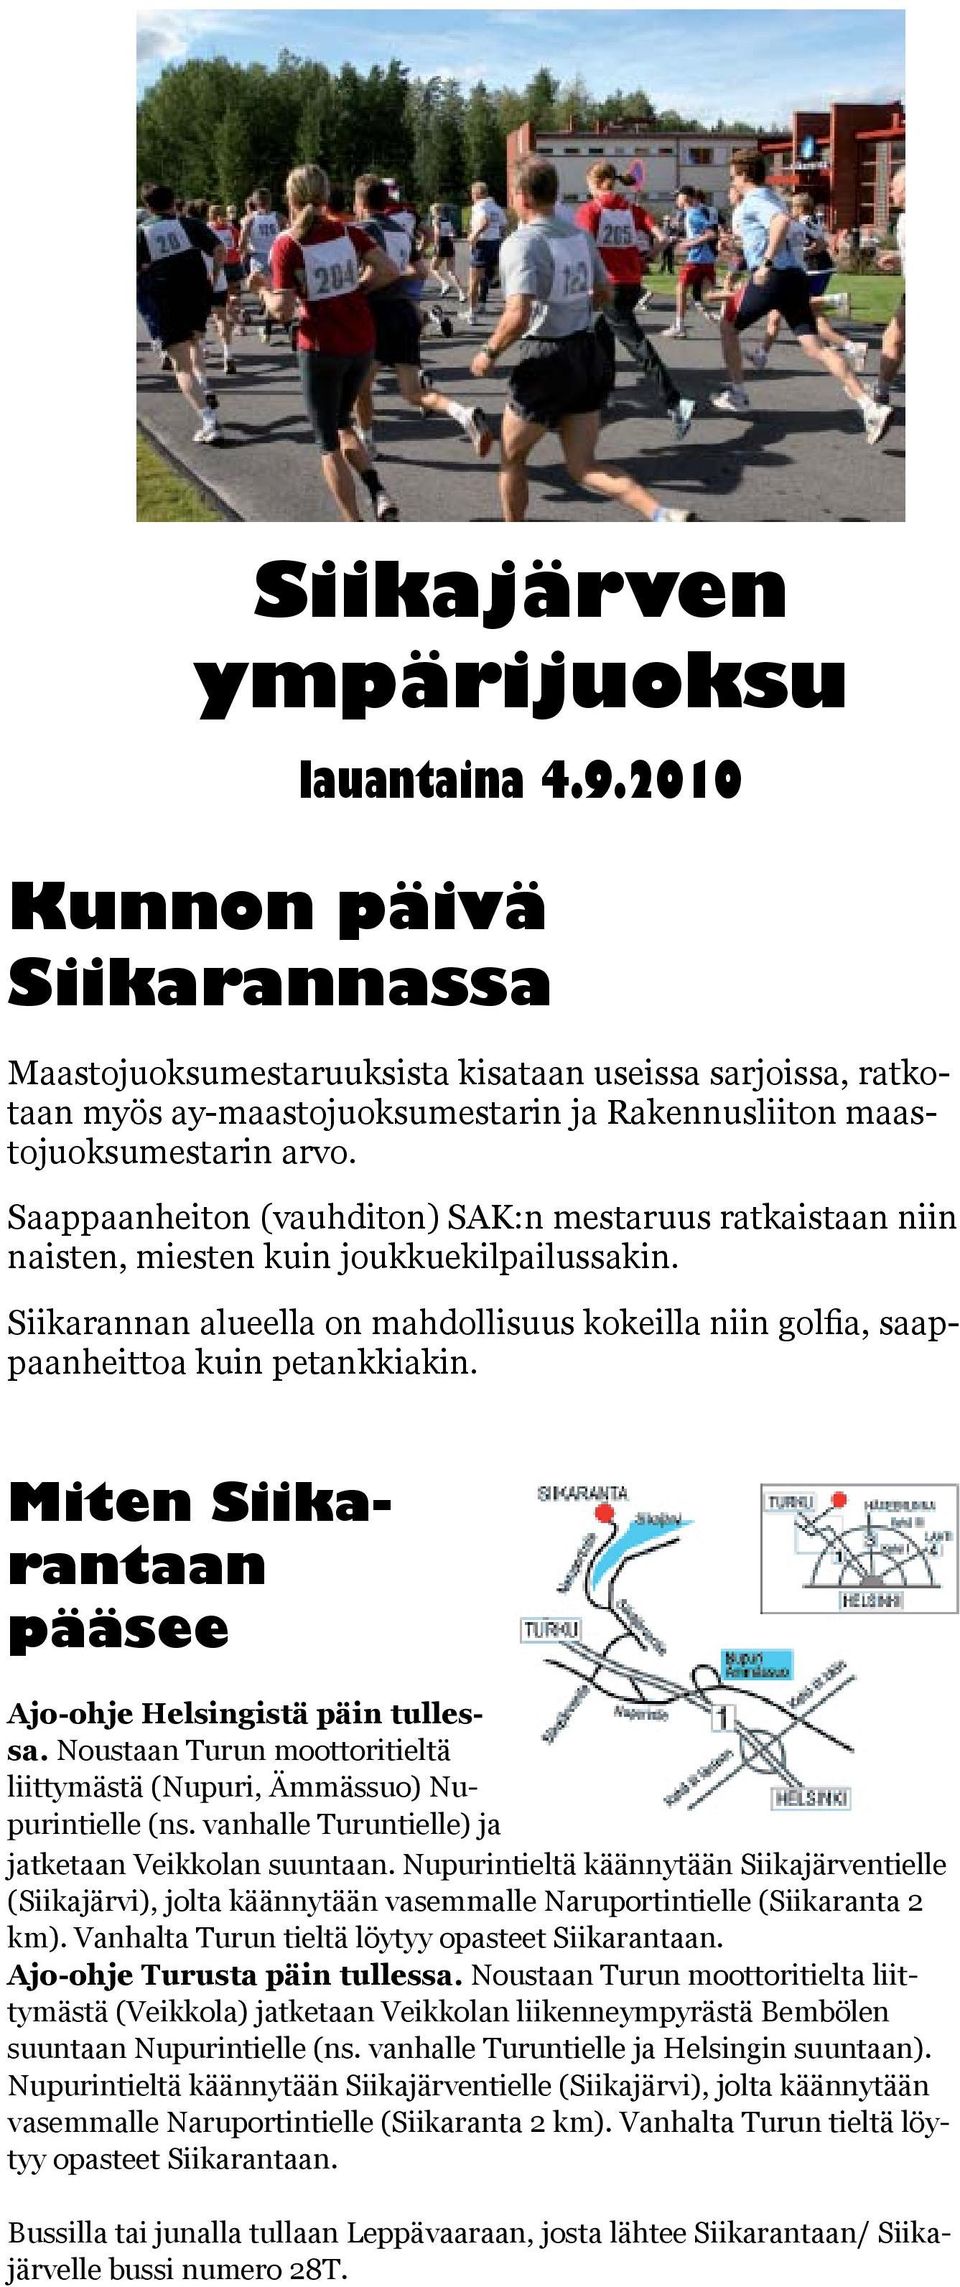 Noustaan Turun moottoritielta liitkolan liikenneympyrästä Bembölen lle Turuntielle ja Helsingin suuntaan). ventielle (Siikajärvi), jolta käännytään aranta 2 km).